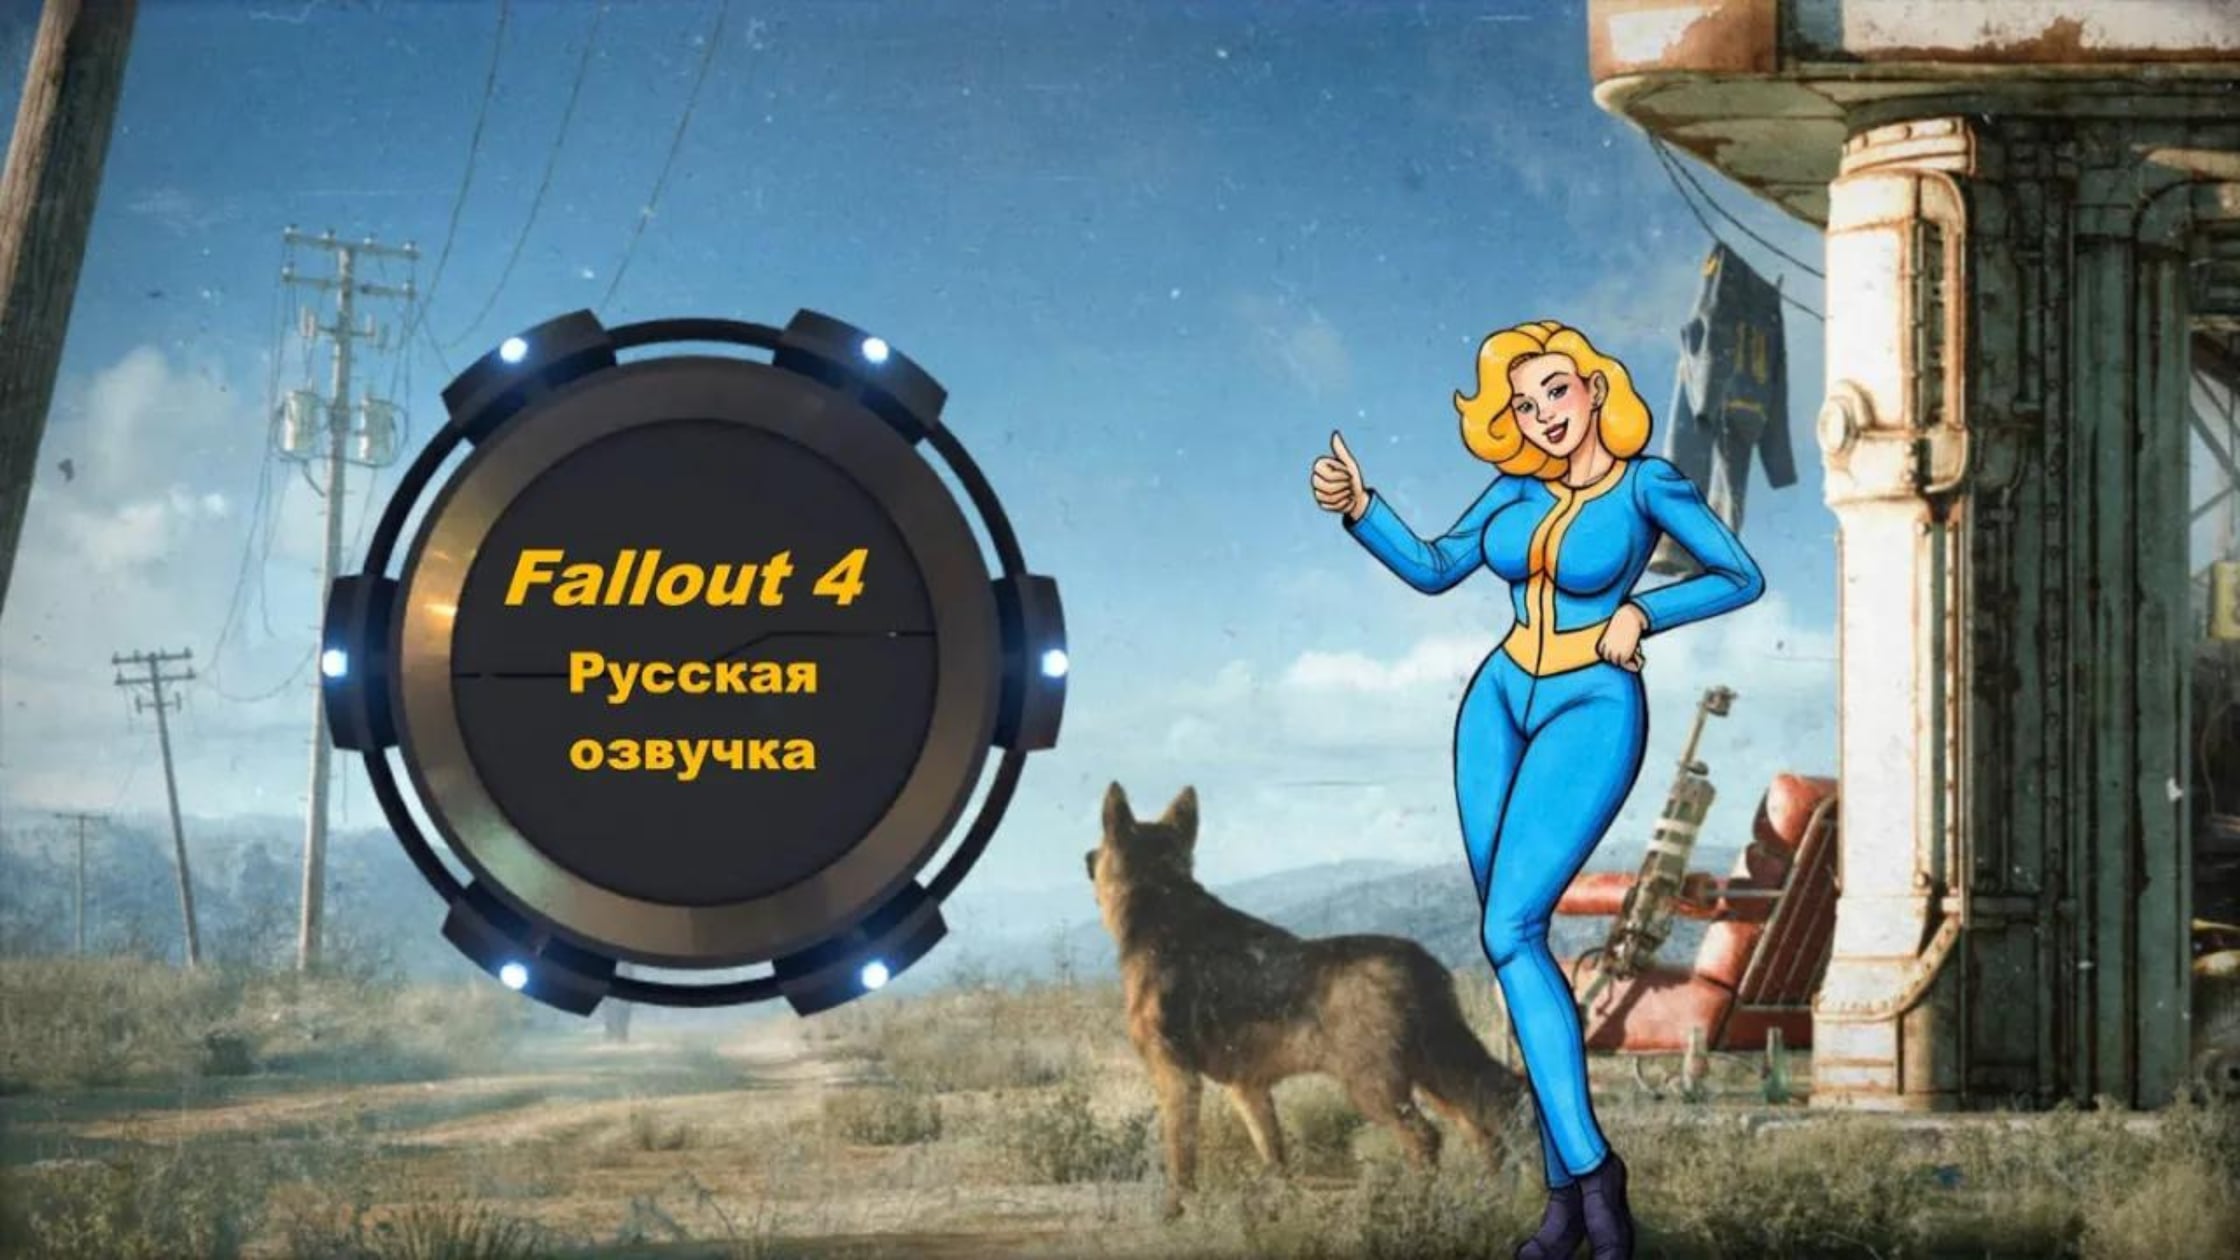 озвучка для fallout 4 от cool games фото 1